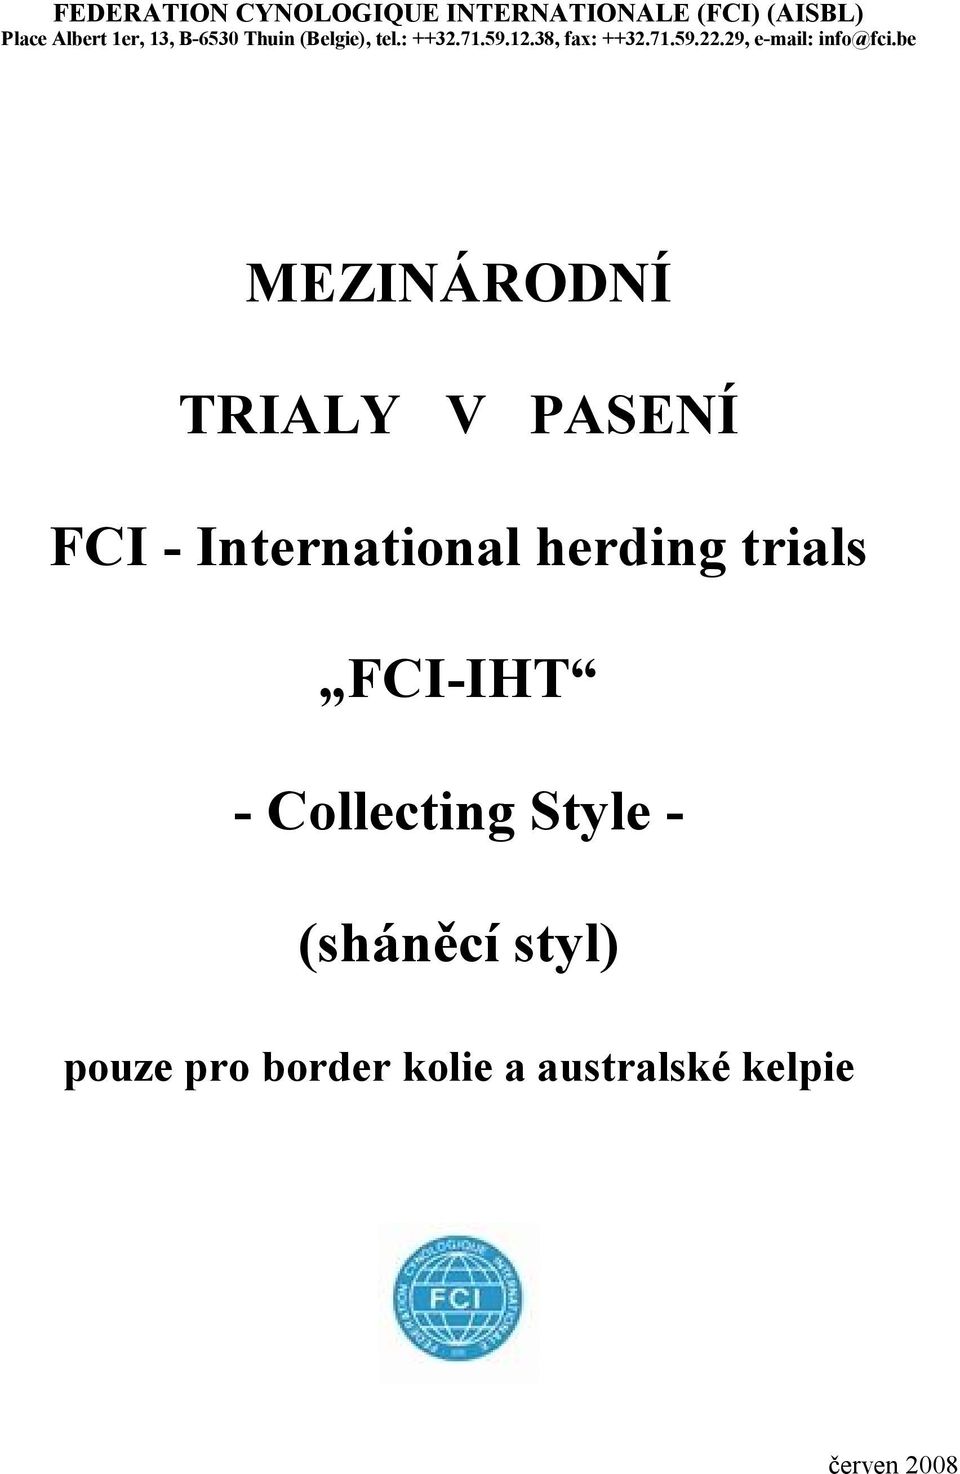 be MEZINÁRODNÍ TRIALY V PASENÍ FCI - International herding trials FCI-IHT -